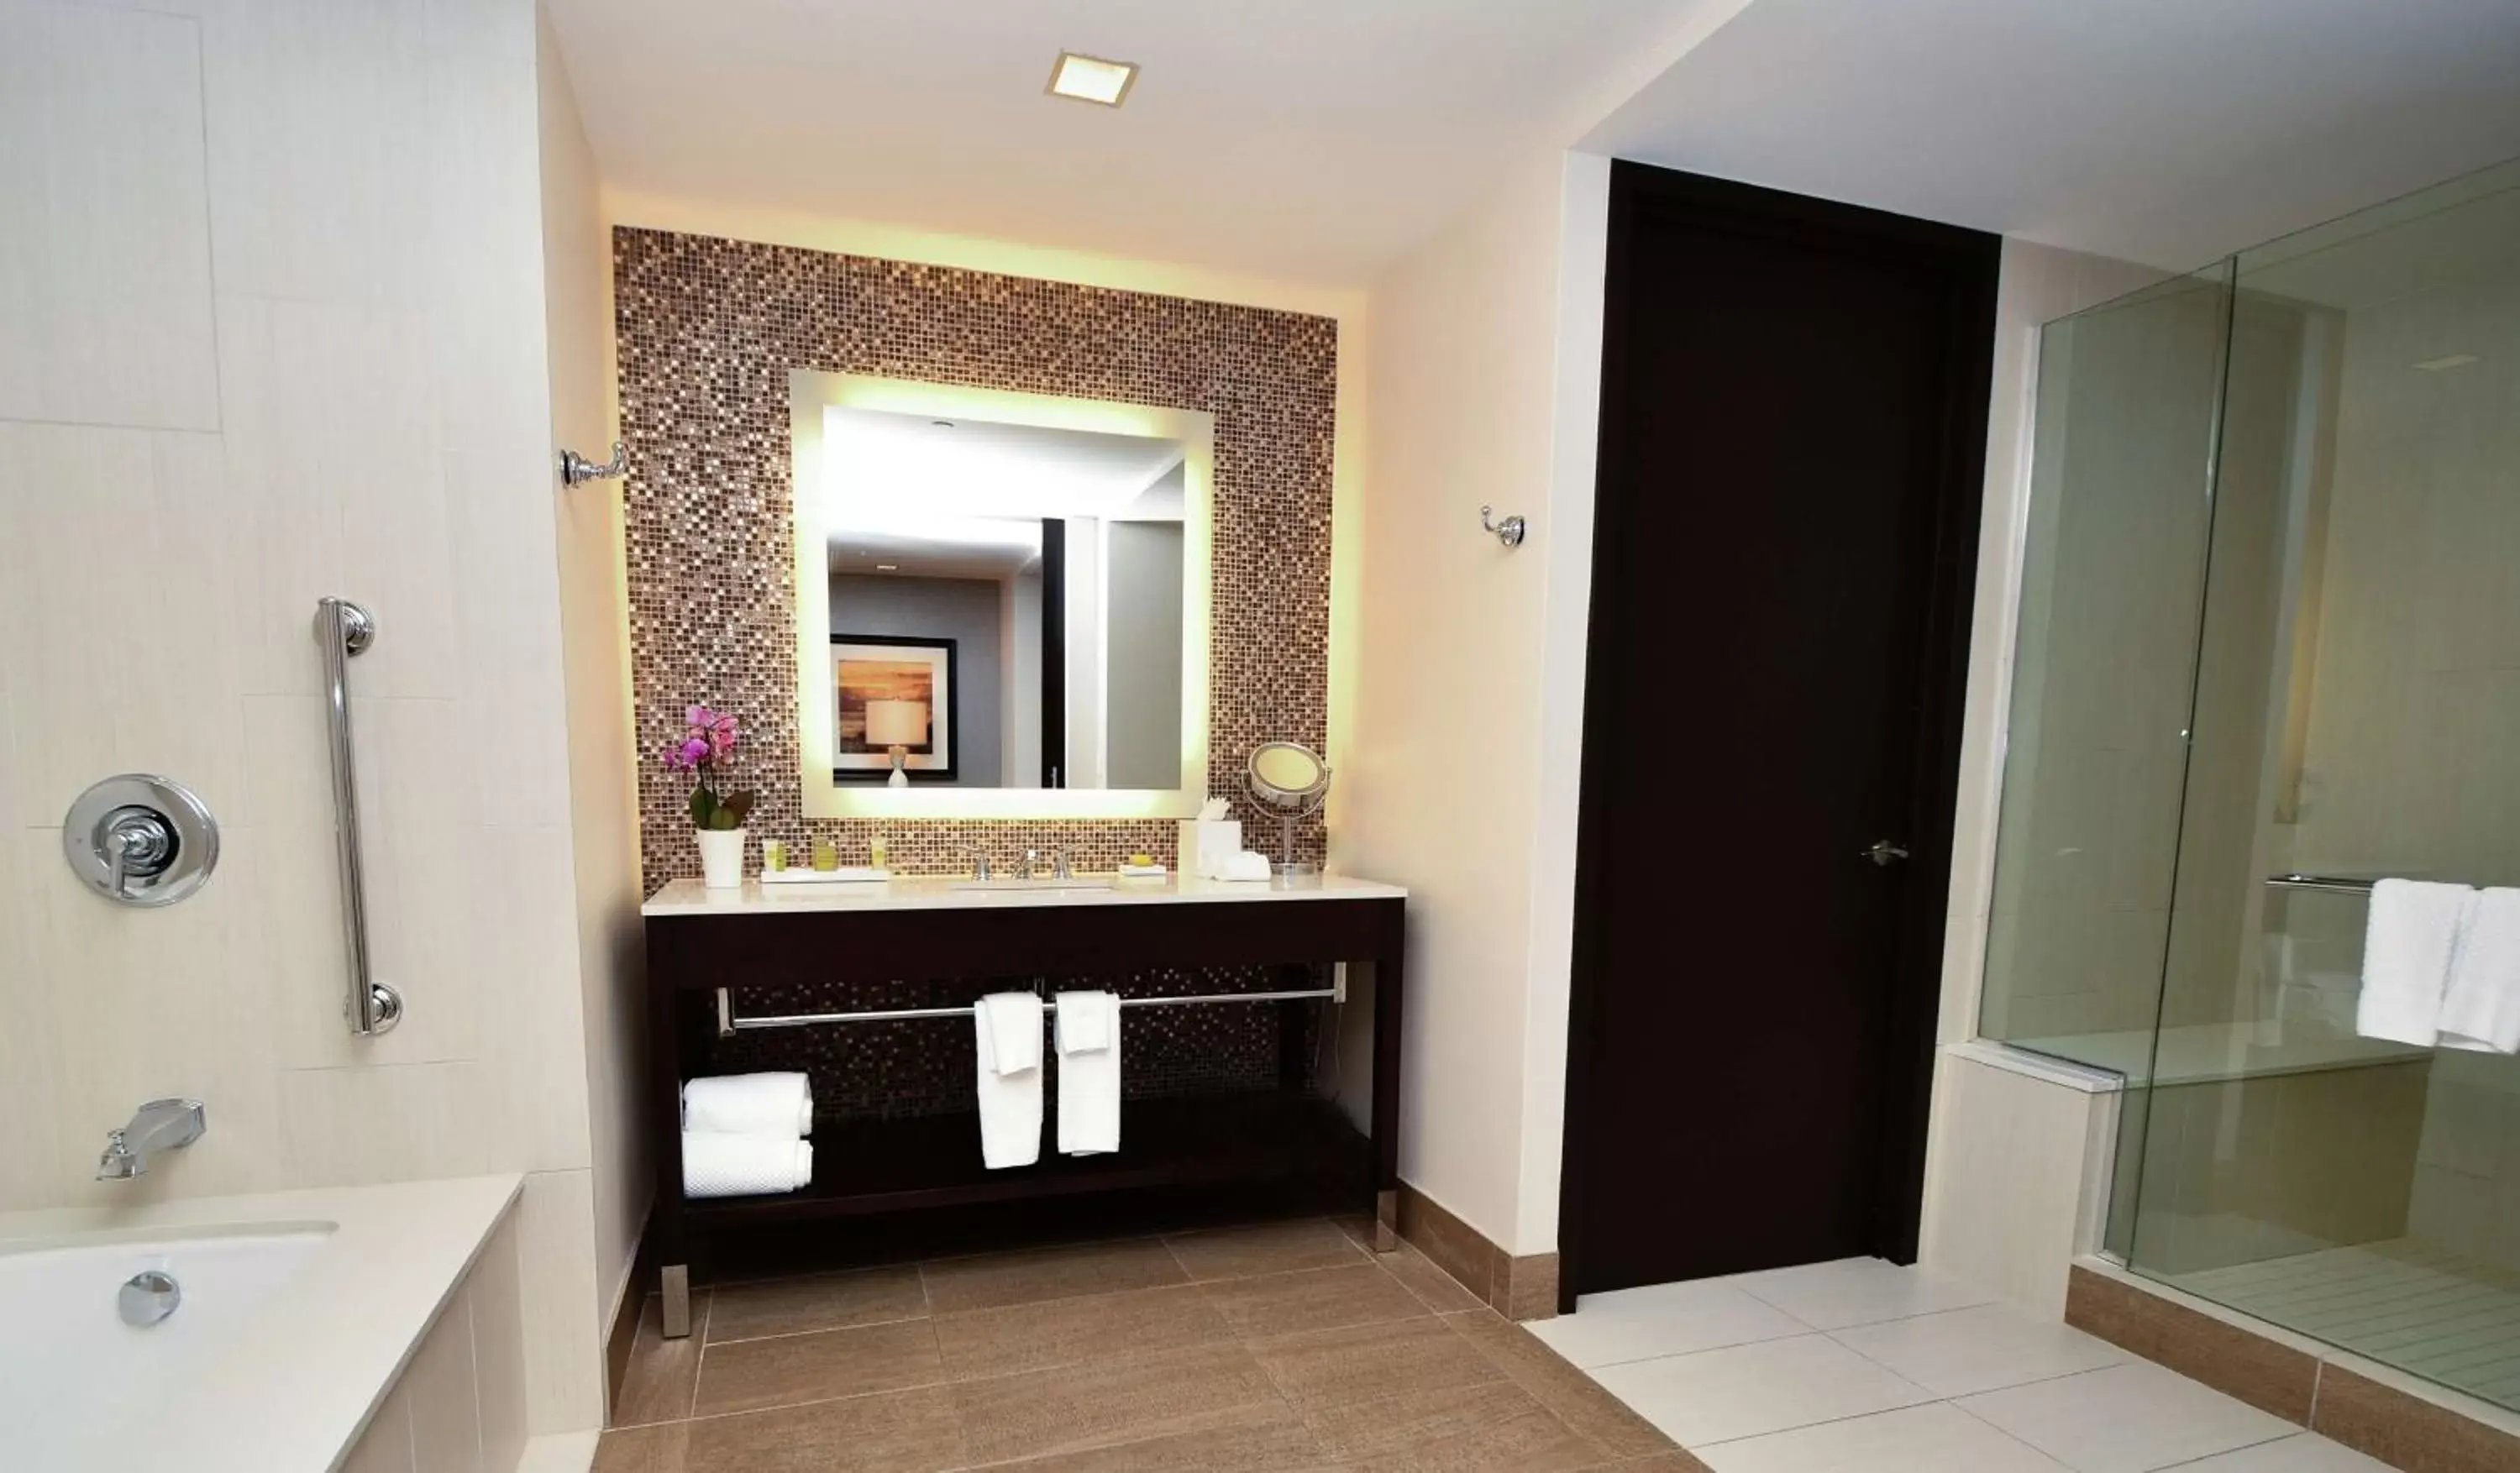 Bathroom in Hilton Dallas/Plano Granite Park